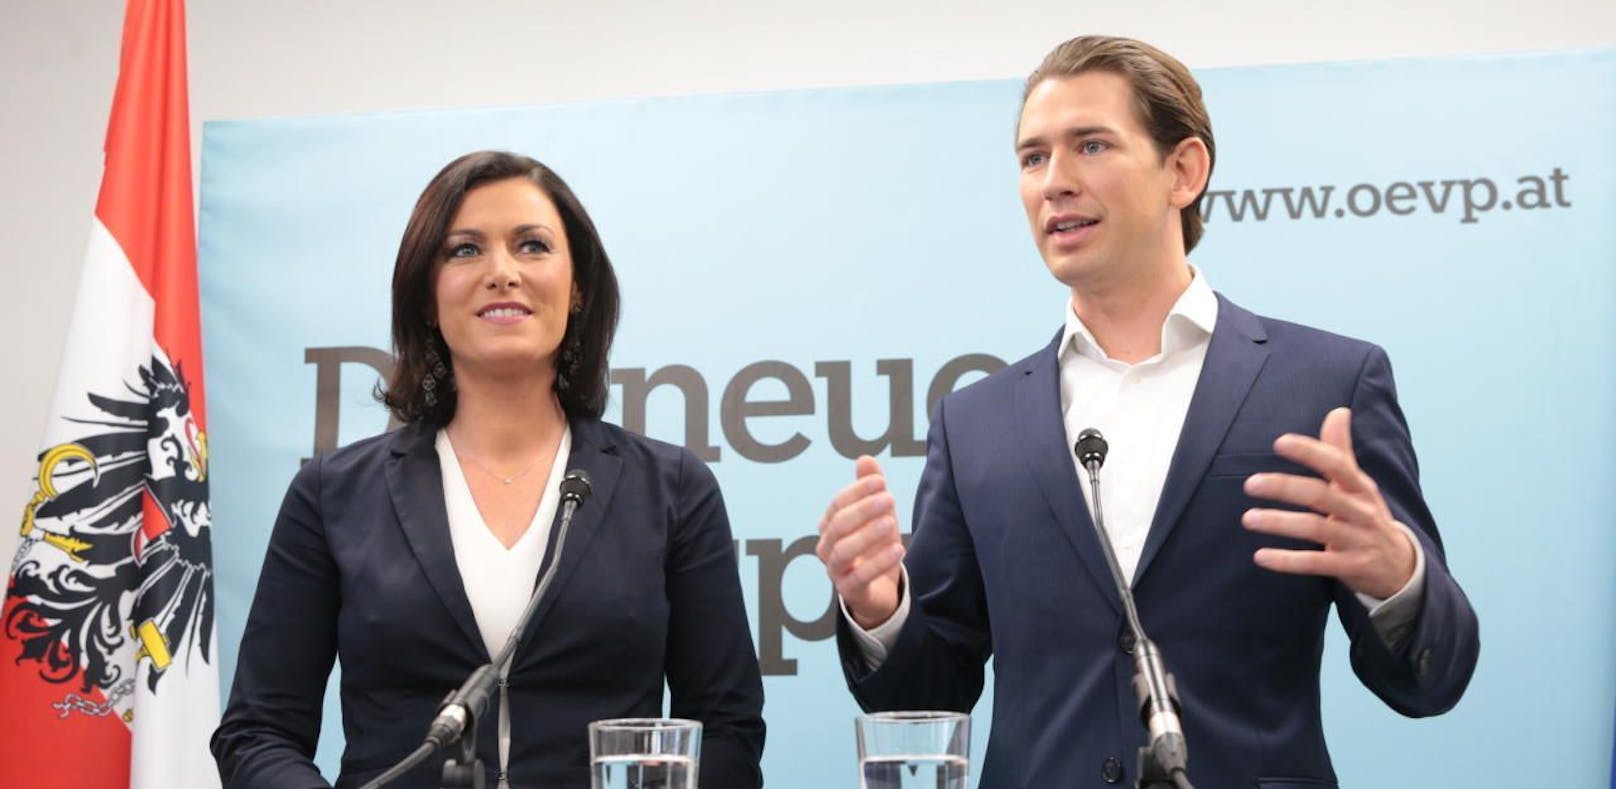 Elisabeth Köstinger und Sebastian Kurz, das neue dynamische Duo der ÖVP.